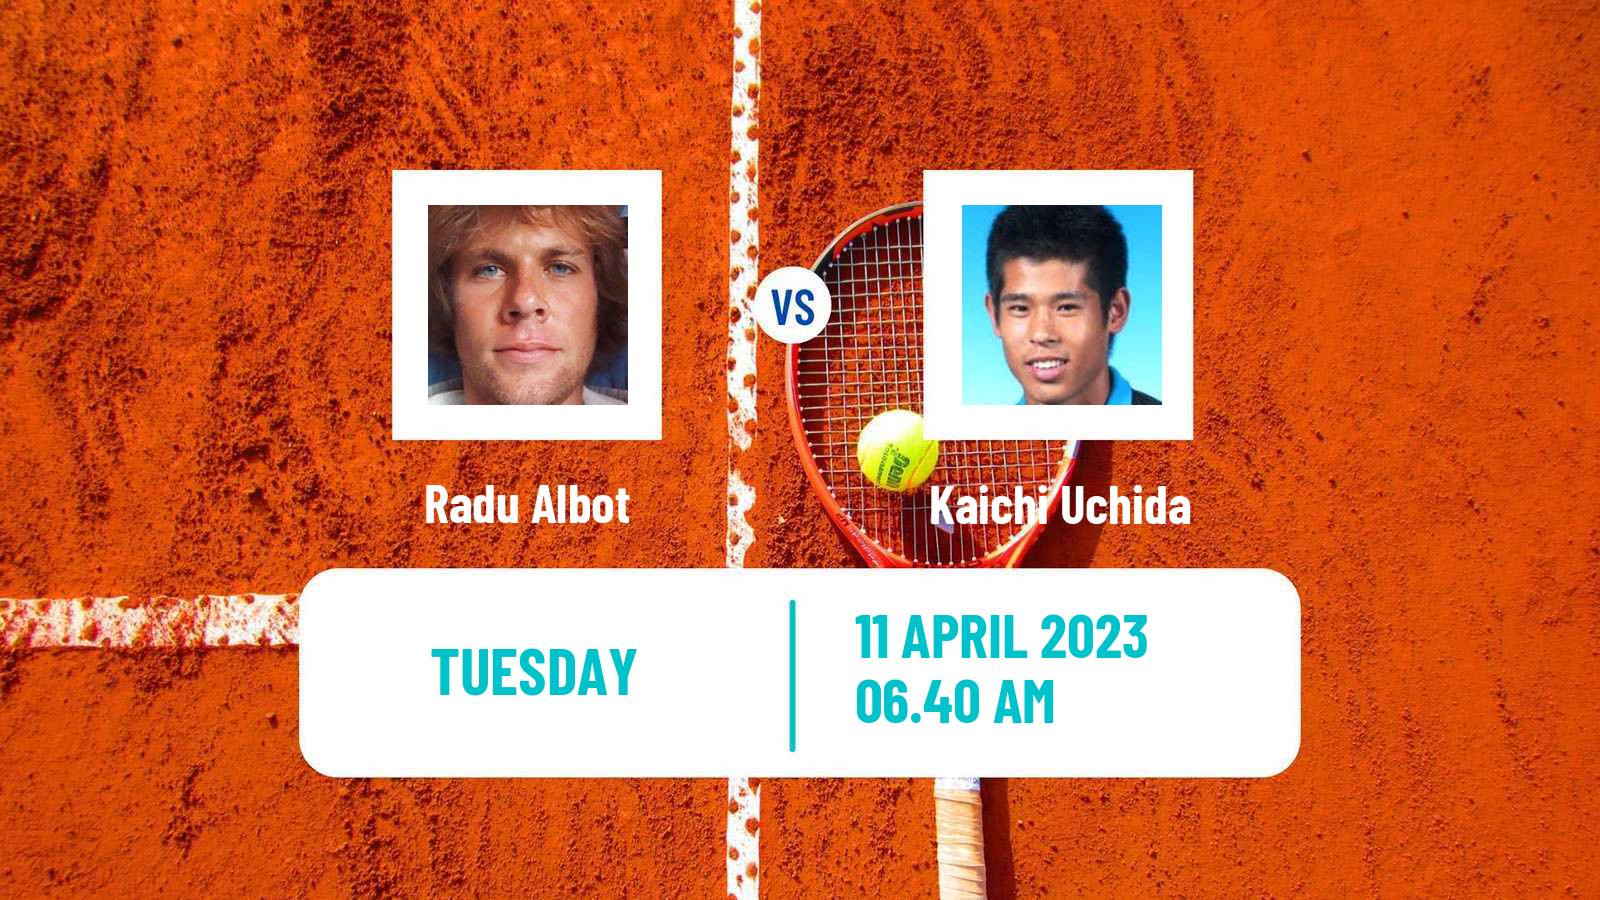 Tennis ATP Challenger Radu Albot - Kaichi Uchida